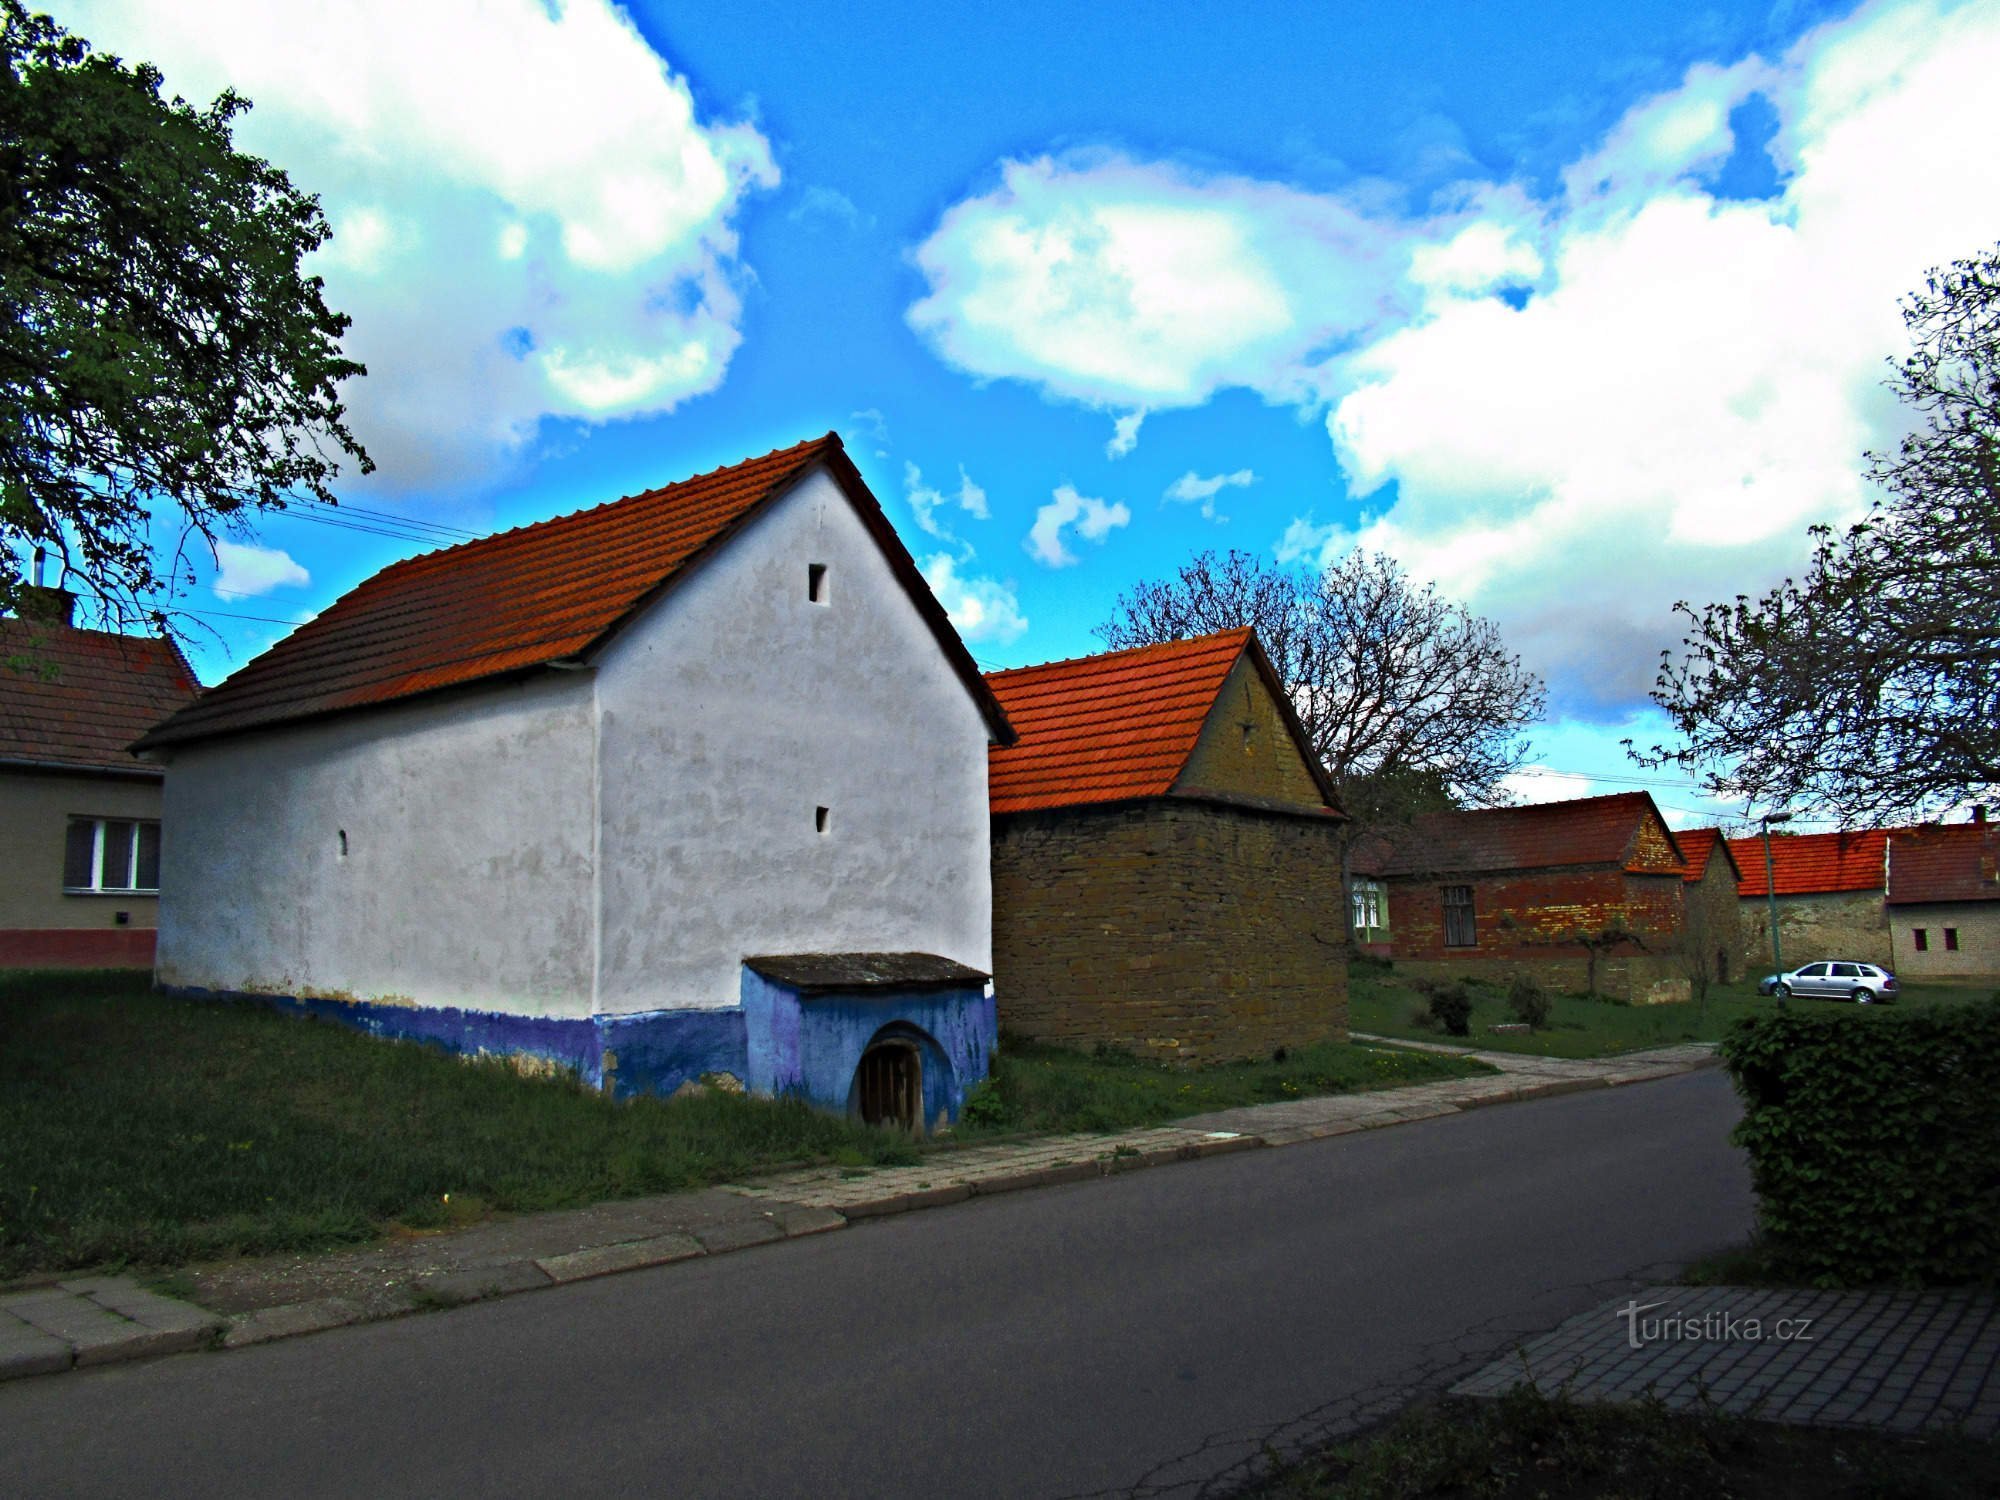 Huizen met volksarchitectuur in het dorp Hrubá Vrbka in Slovácko